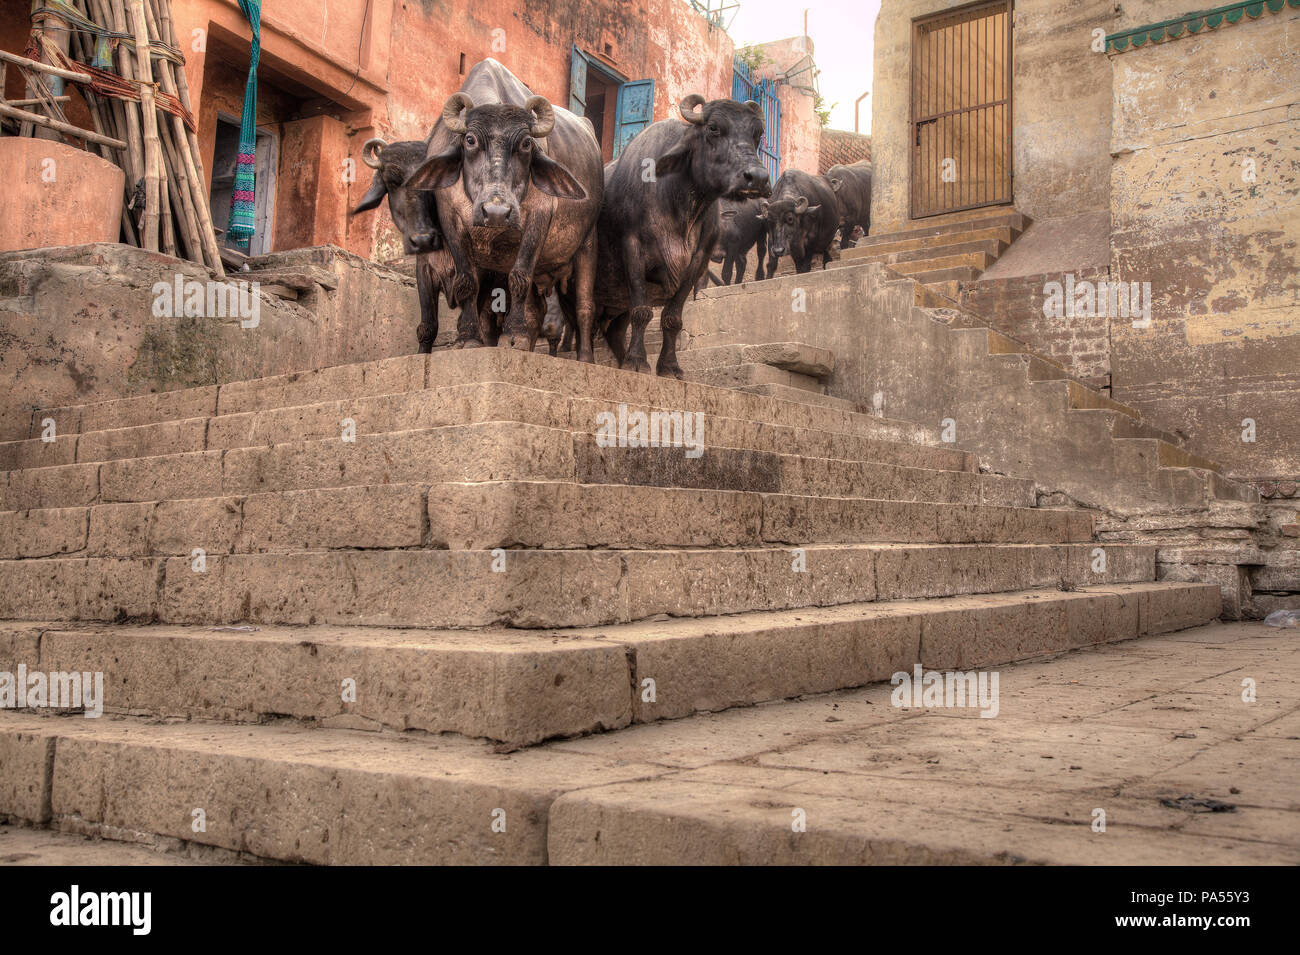 Holy cows at ghats in ancient city of Varanasi, India Stock Photo